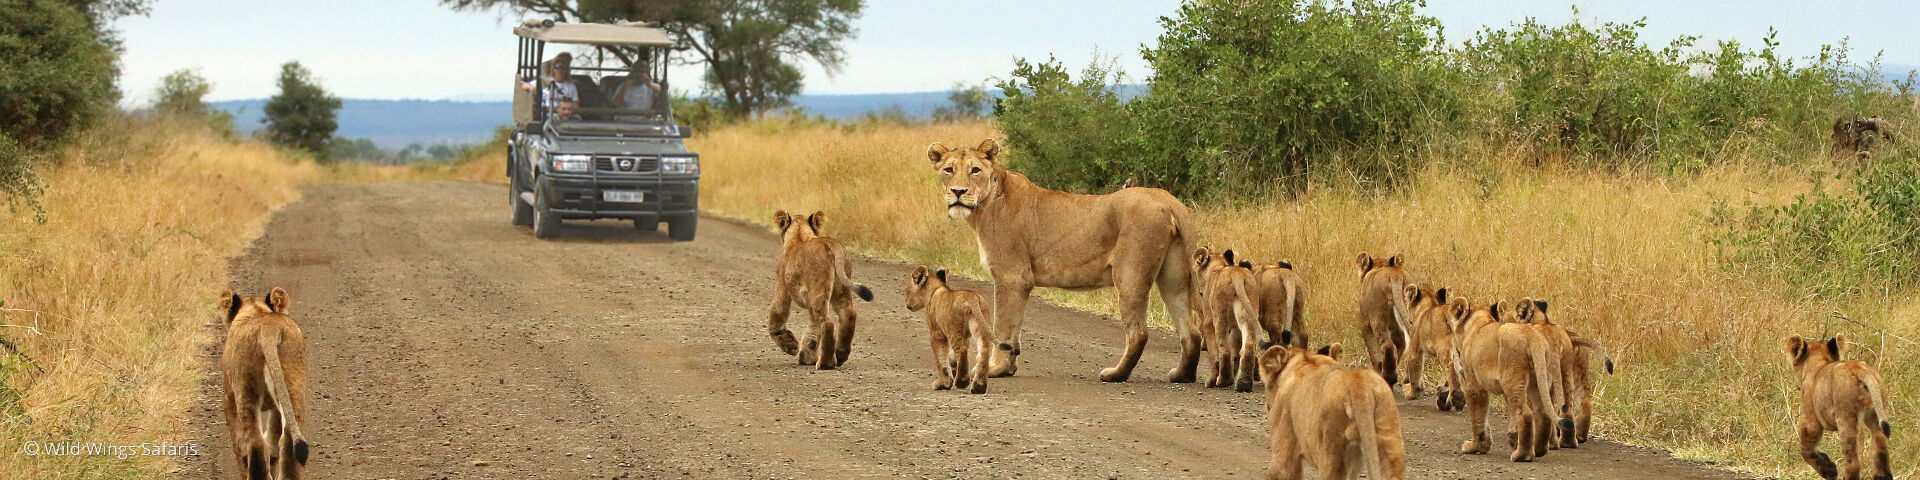 Greater Kruger National Park Safaris